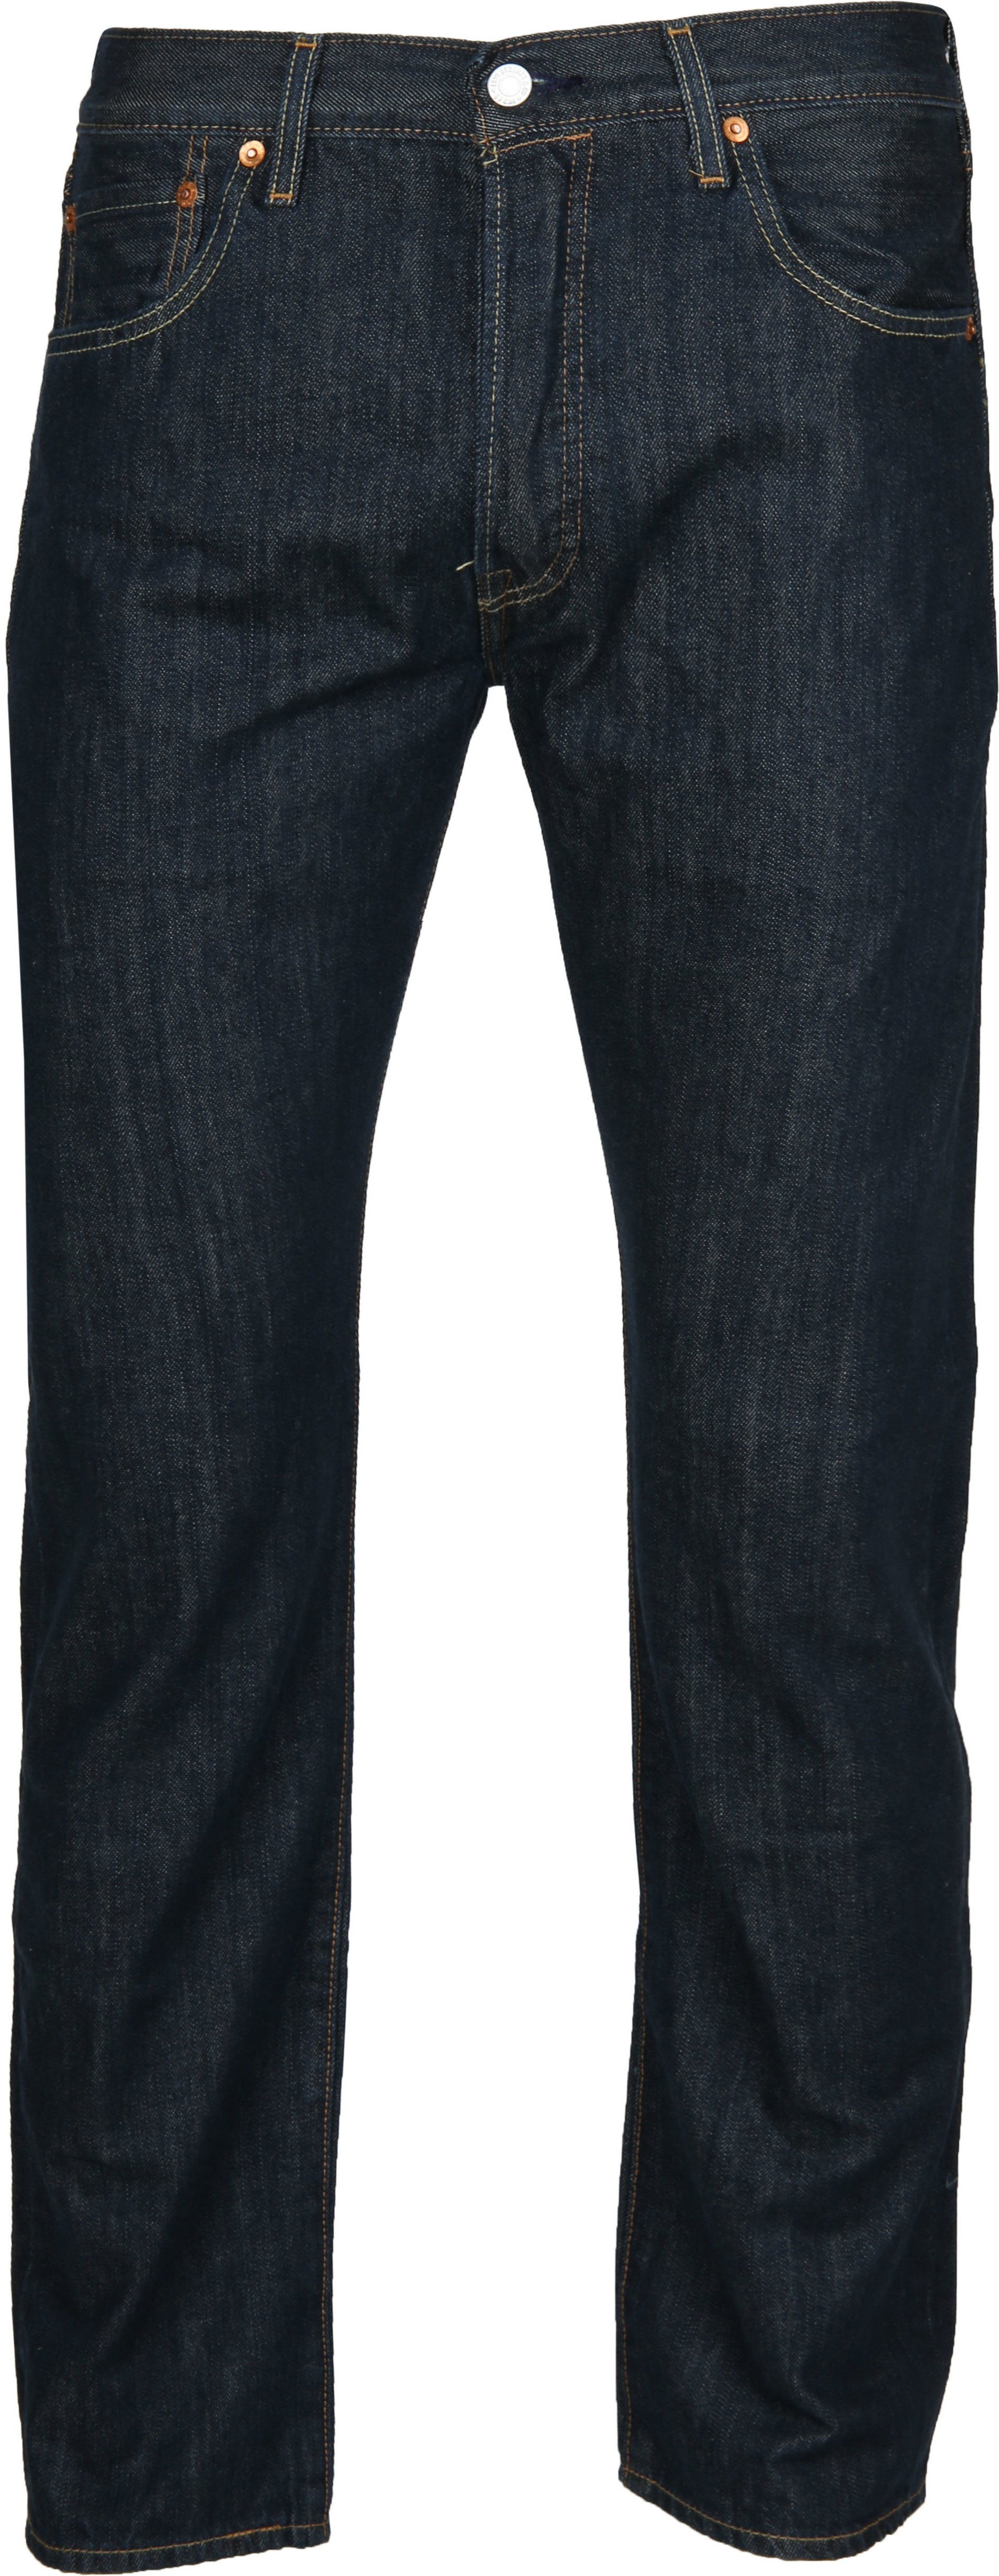 Levi's Jeans 501 Original Fit 0162 Blue size W 31